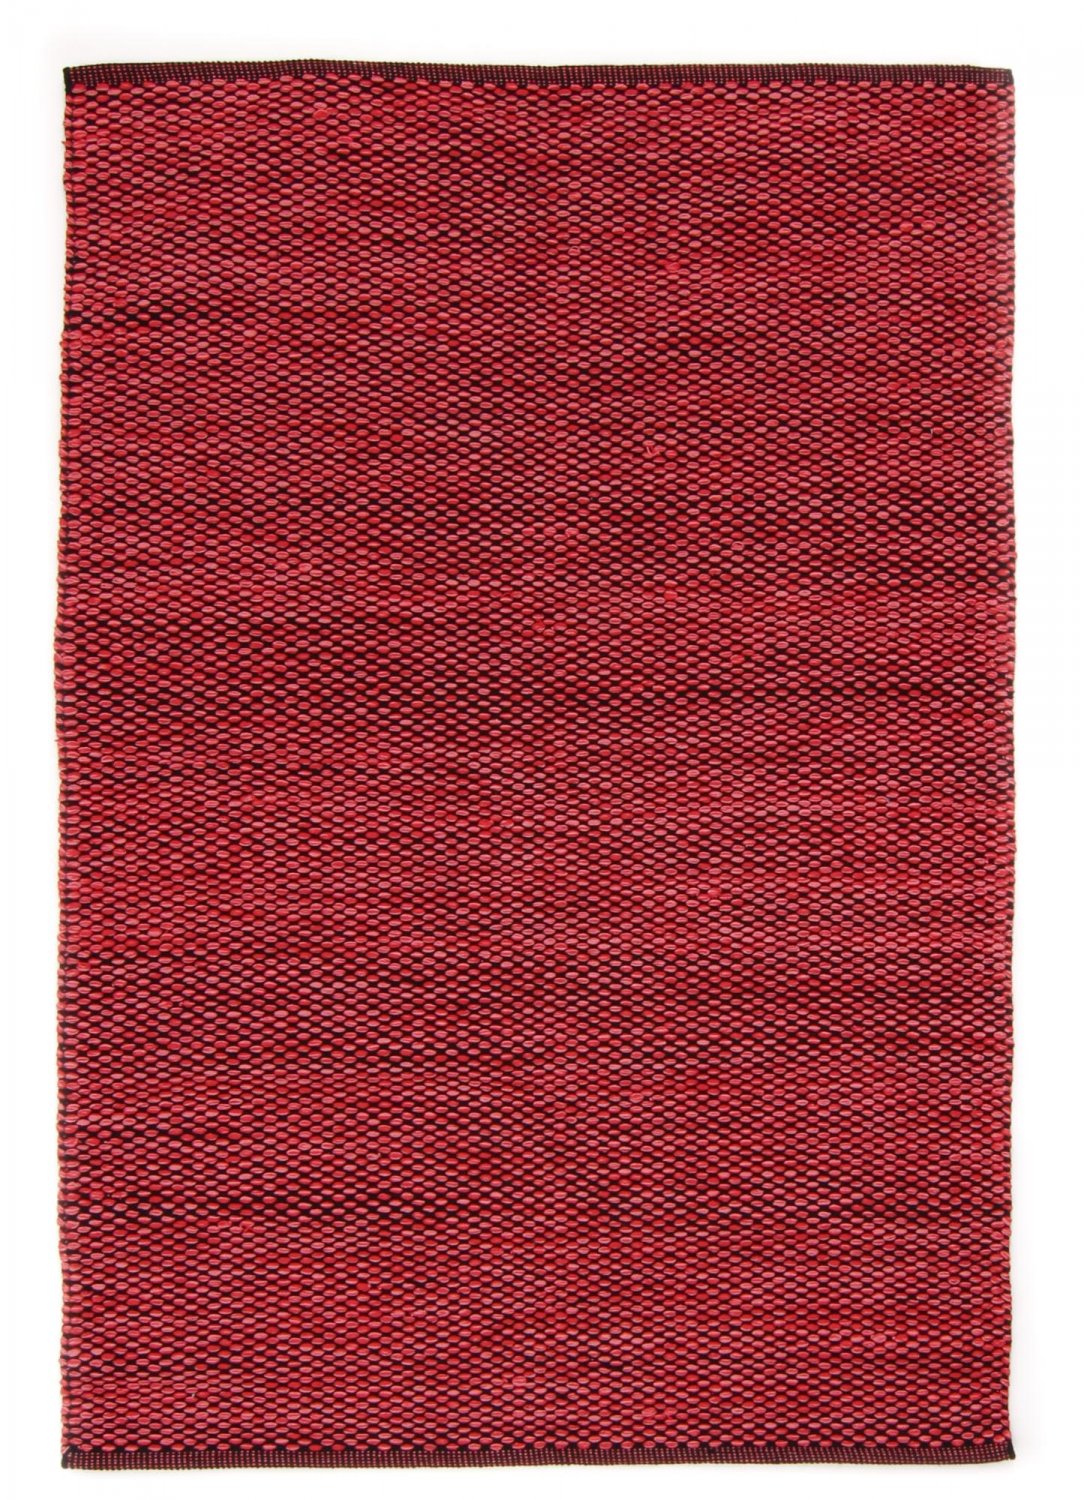 Dywan bawełniany - Tuva (czerwony)